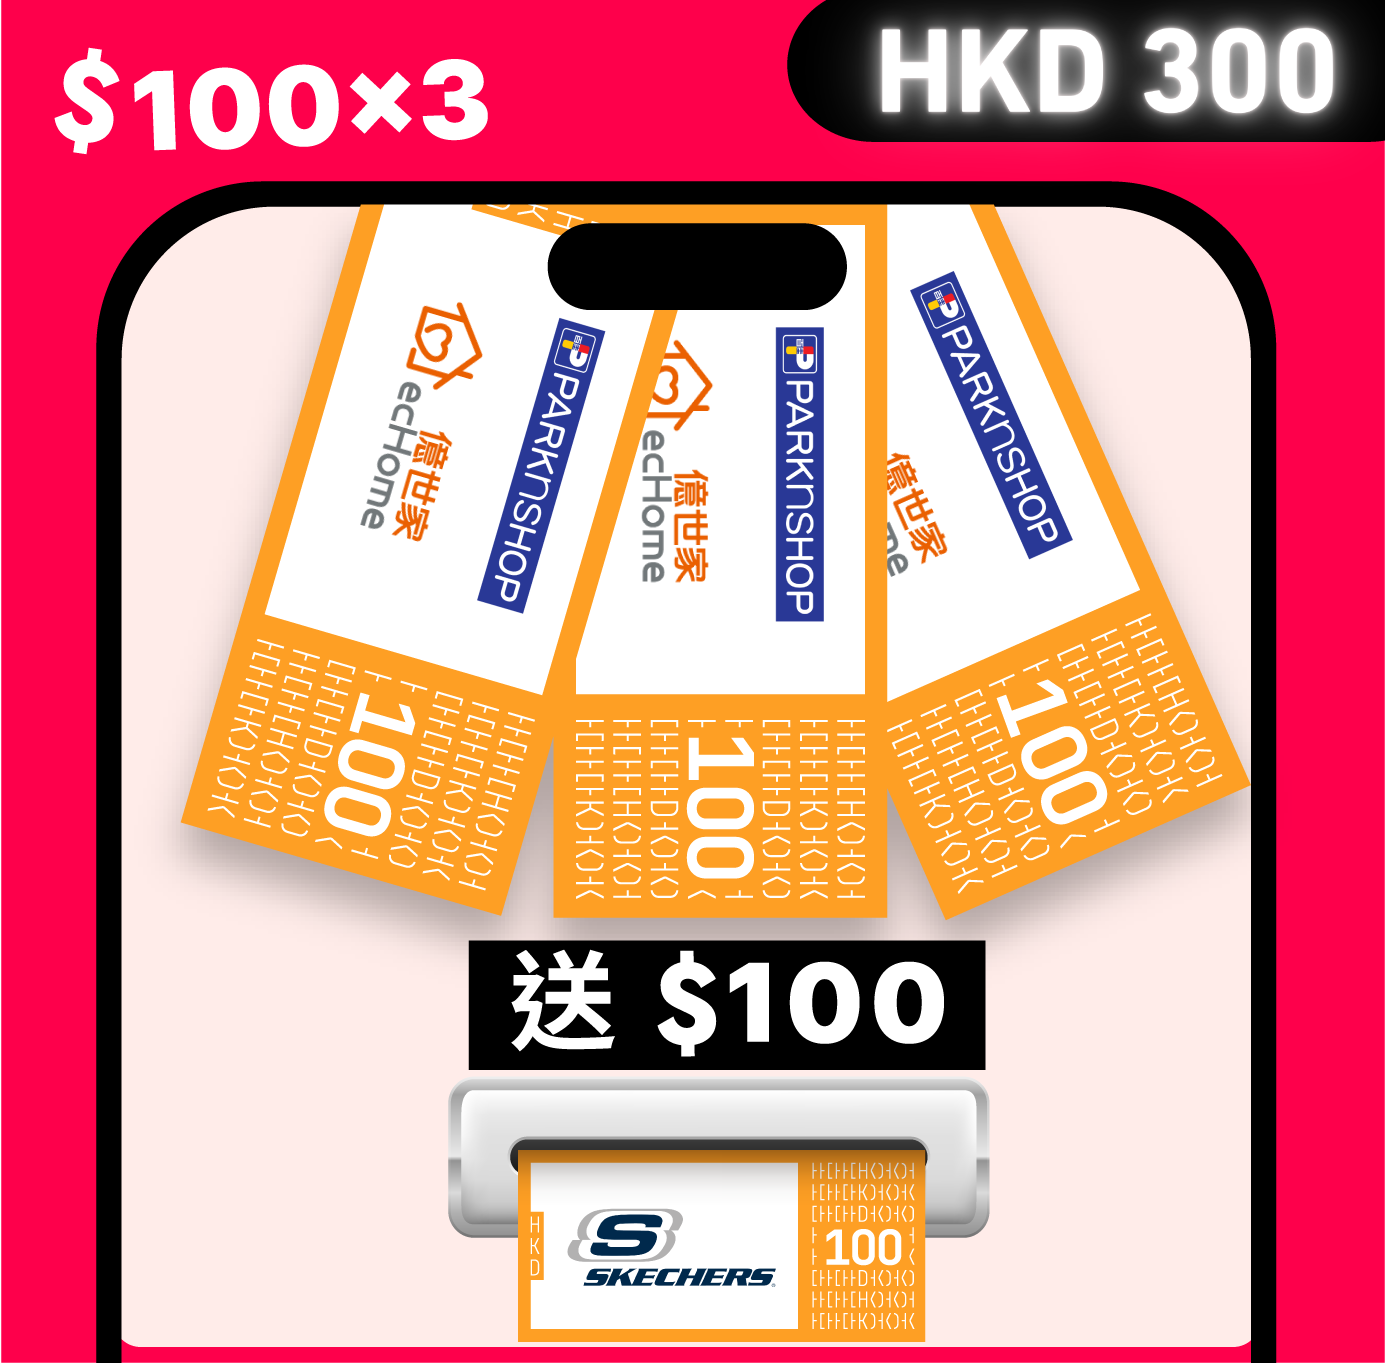 HKD 300 Voucher Pack Set A + HKD 100 for Free